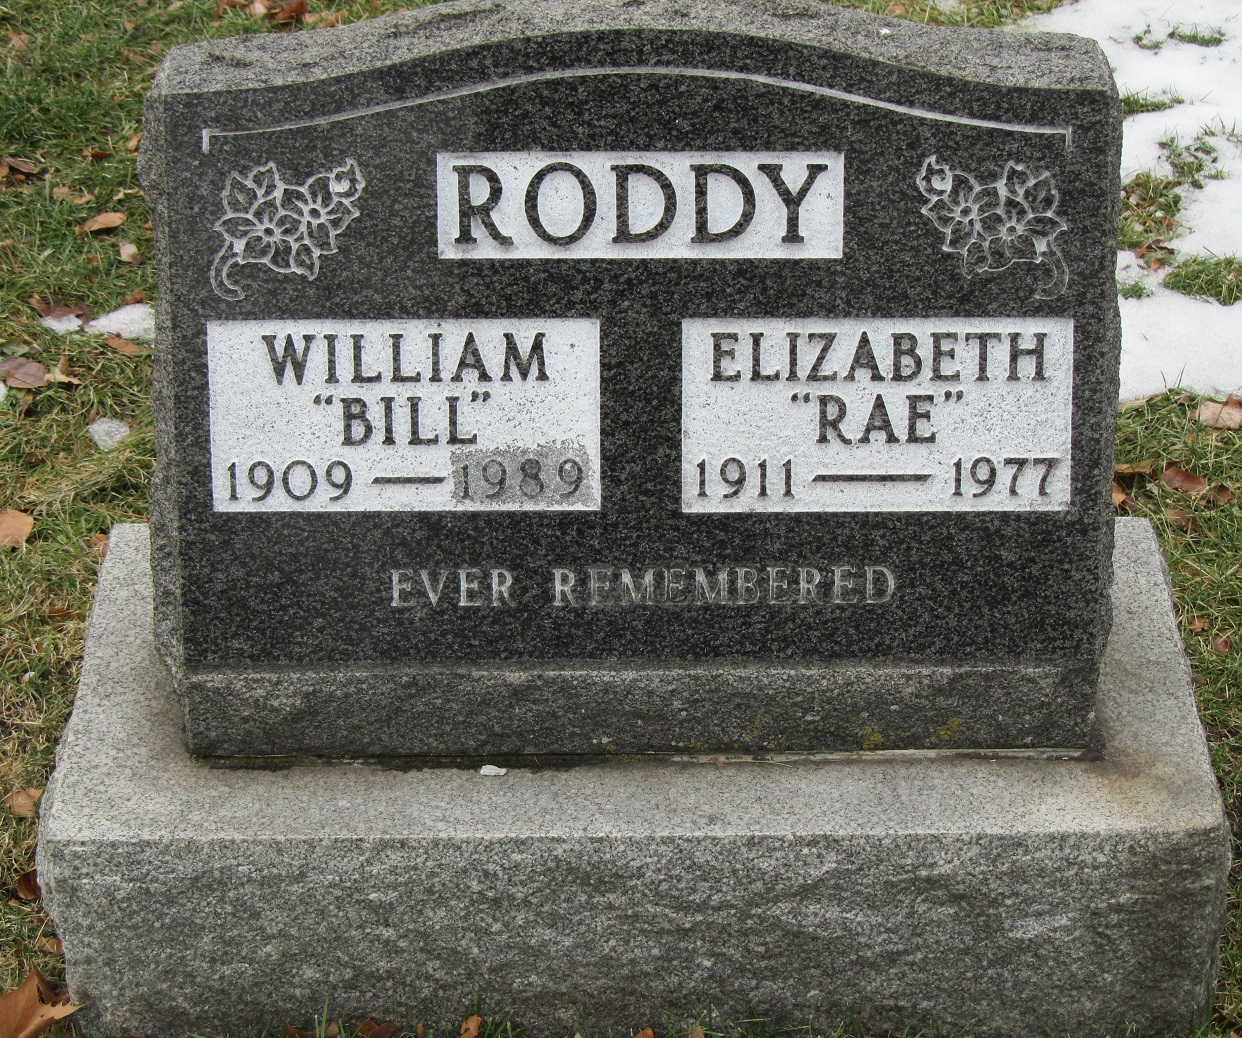 RODDY William 9Bill) 1909-1989 _ Elizabeth (Rae) 1911-1977